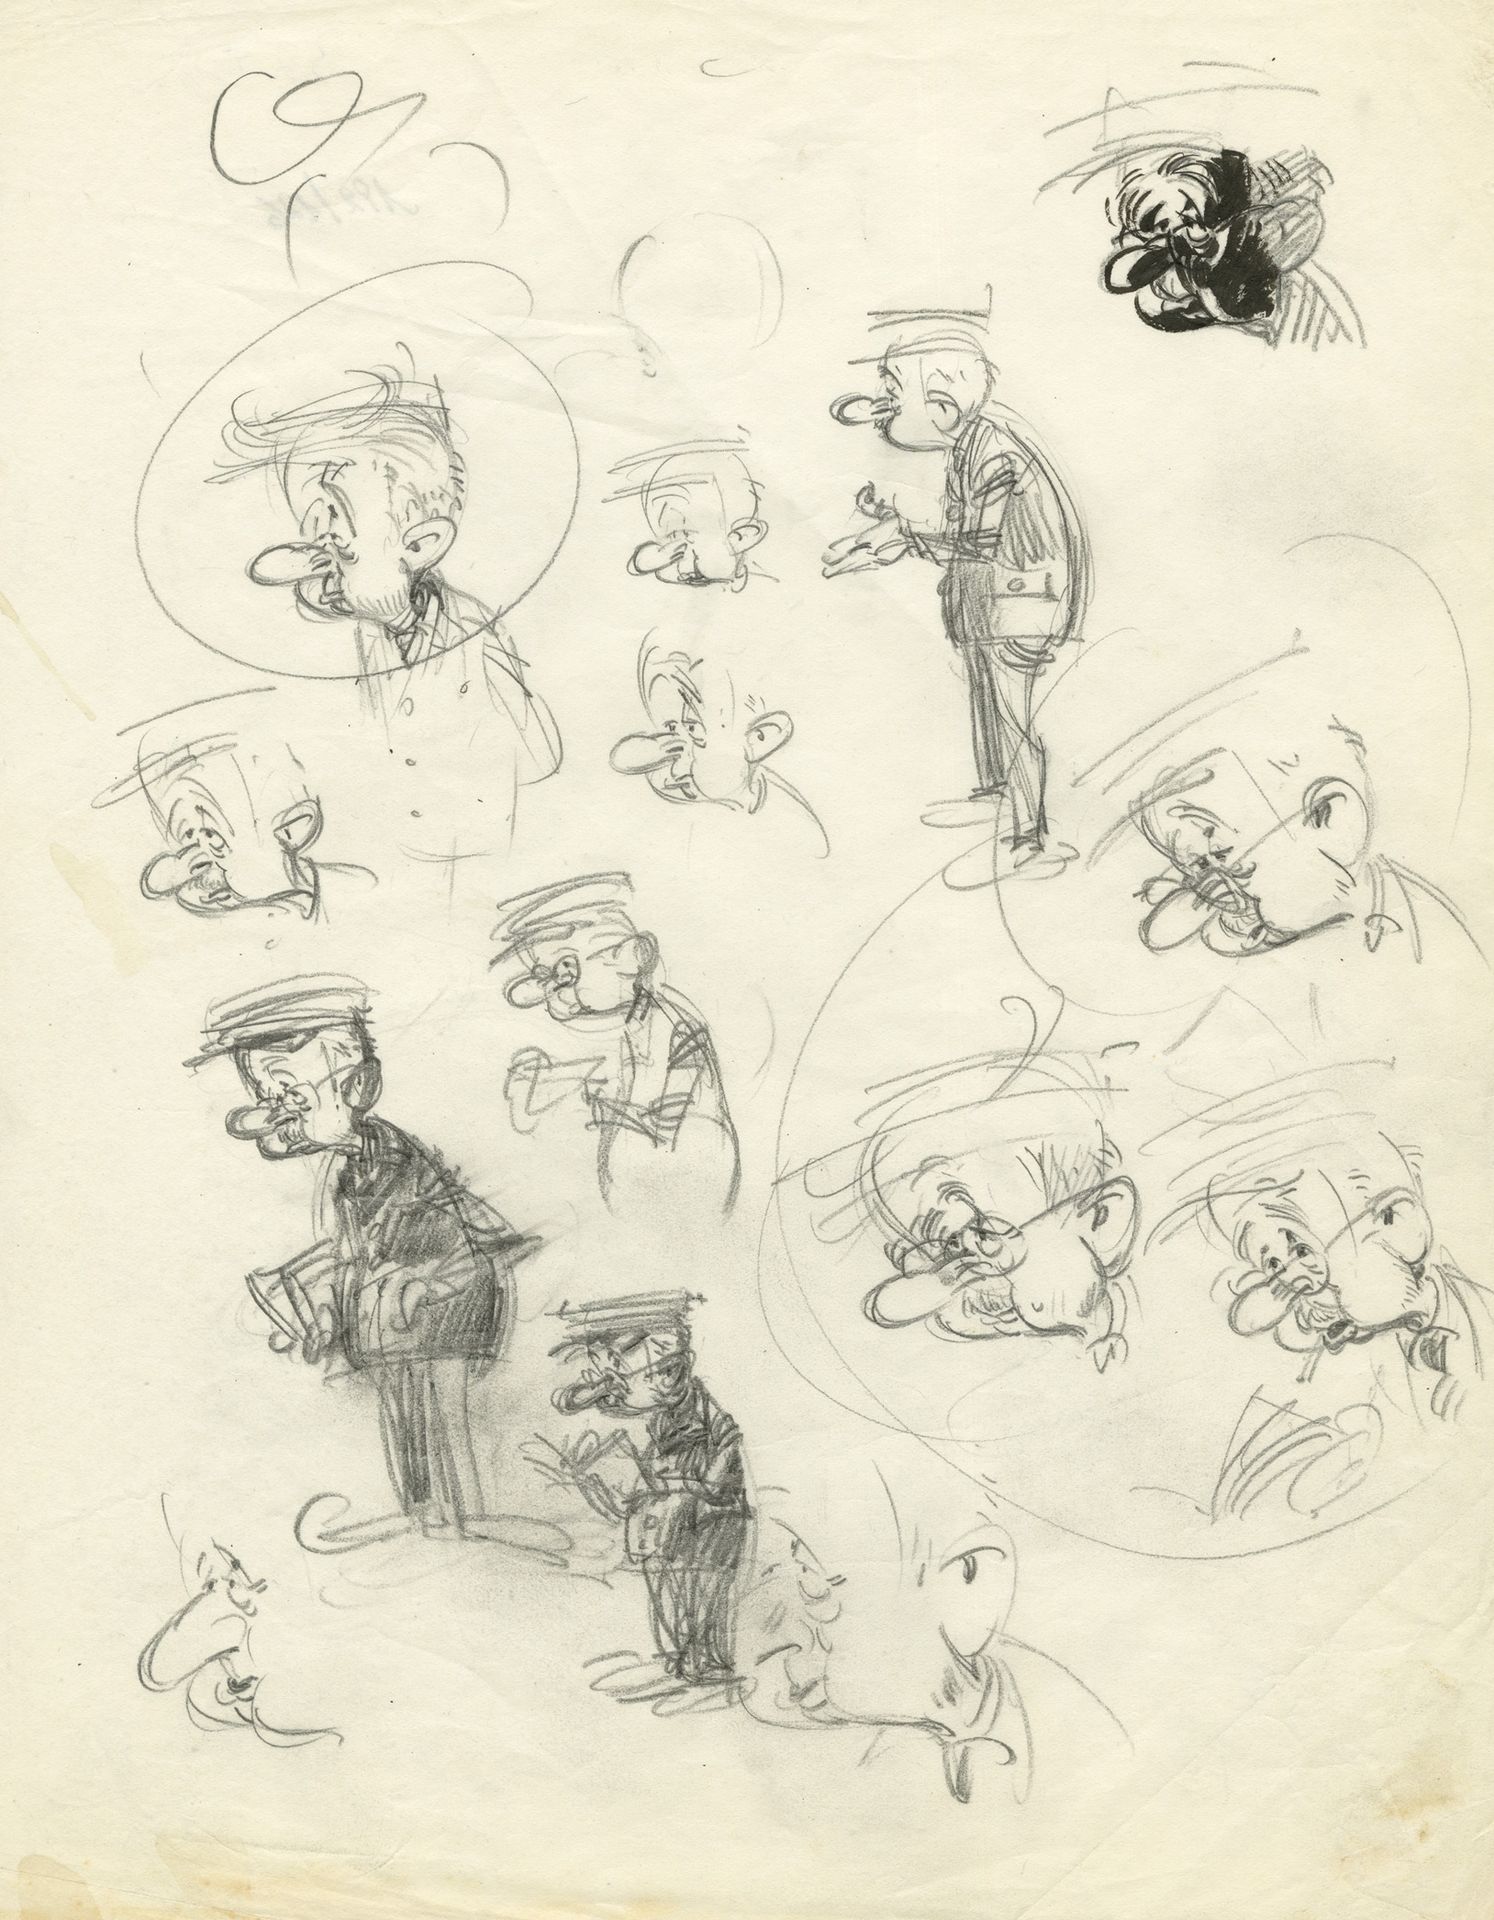 ANDRE FRANQUIN (1924-1997) Graphit auf Papier.
25,5x20,5 cm.